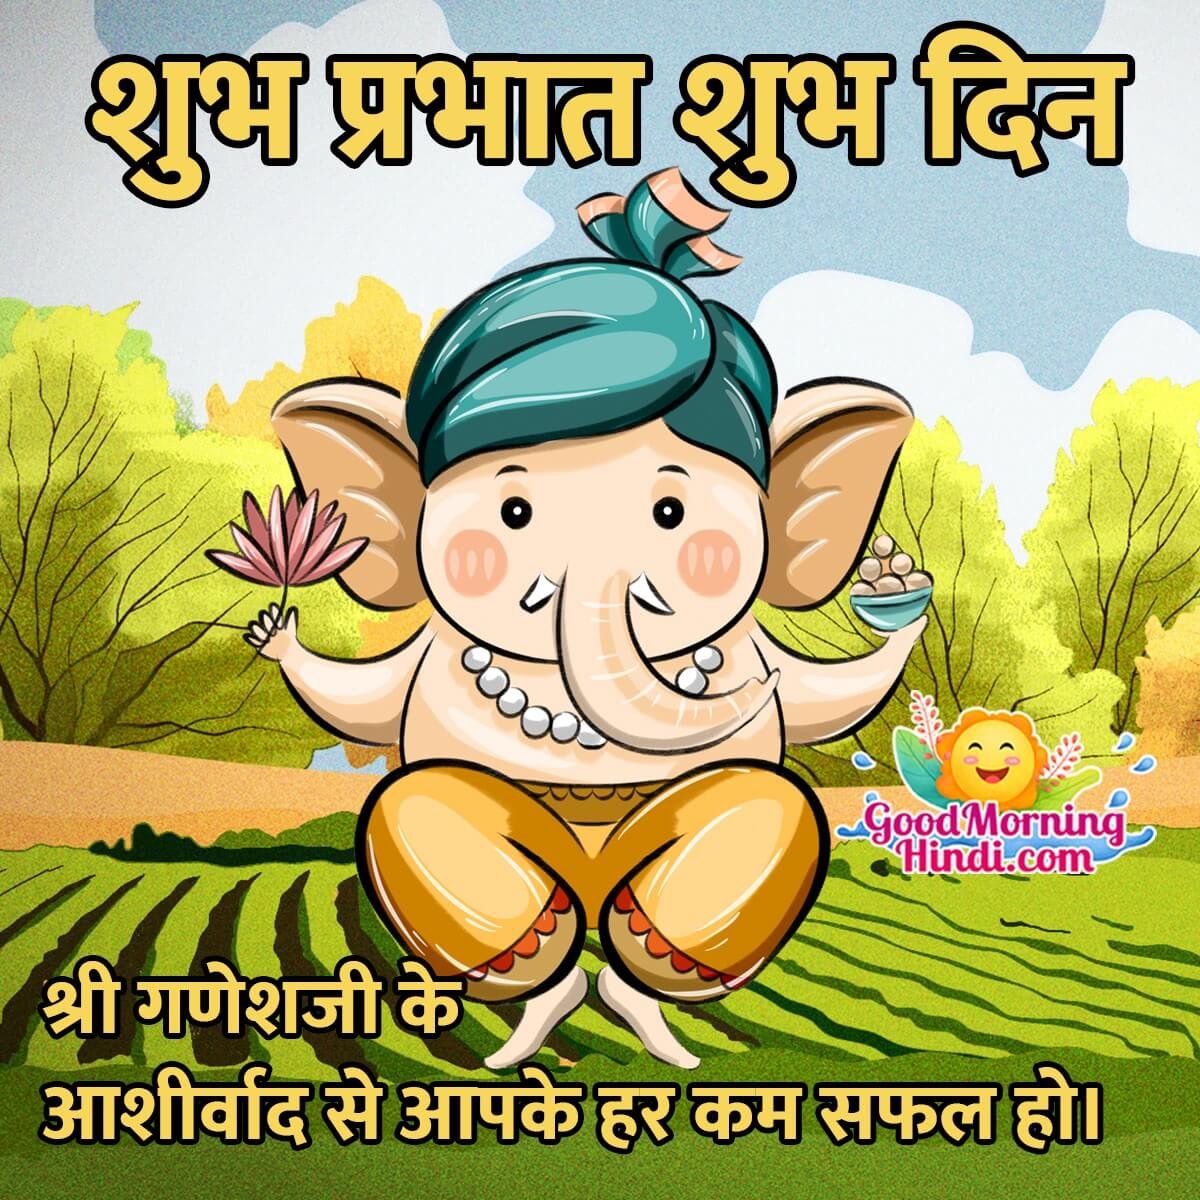 Good Morning Ganesha Hindi Images - Good Morning Wishes & Images ...